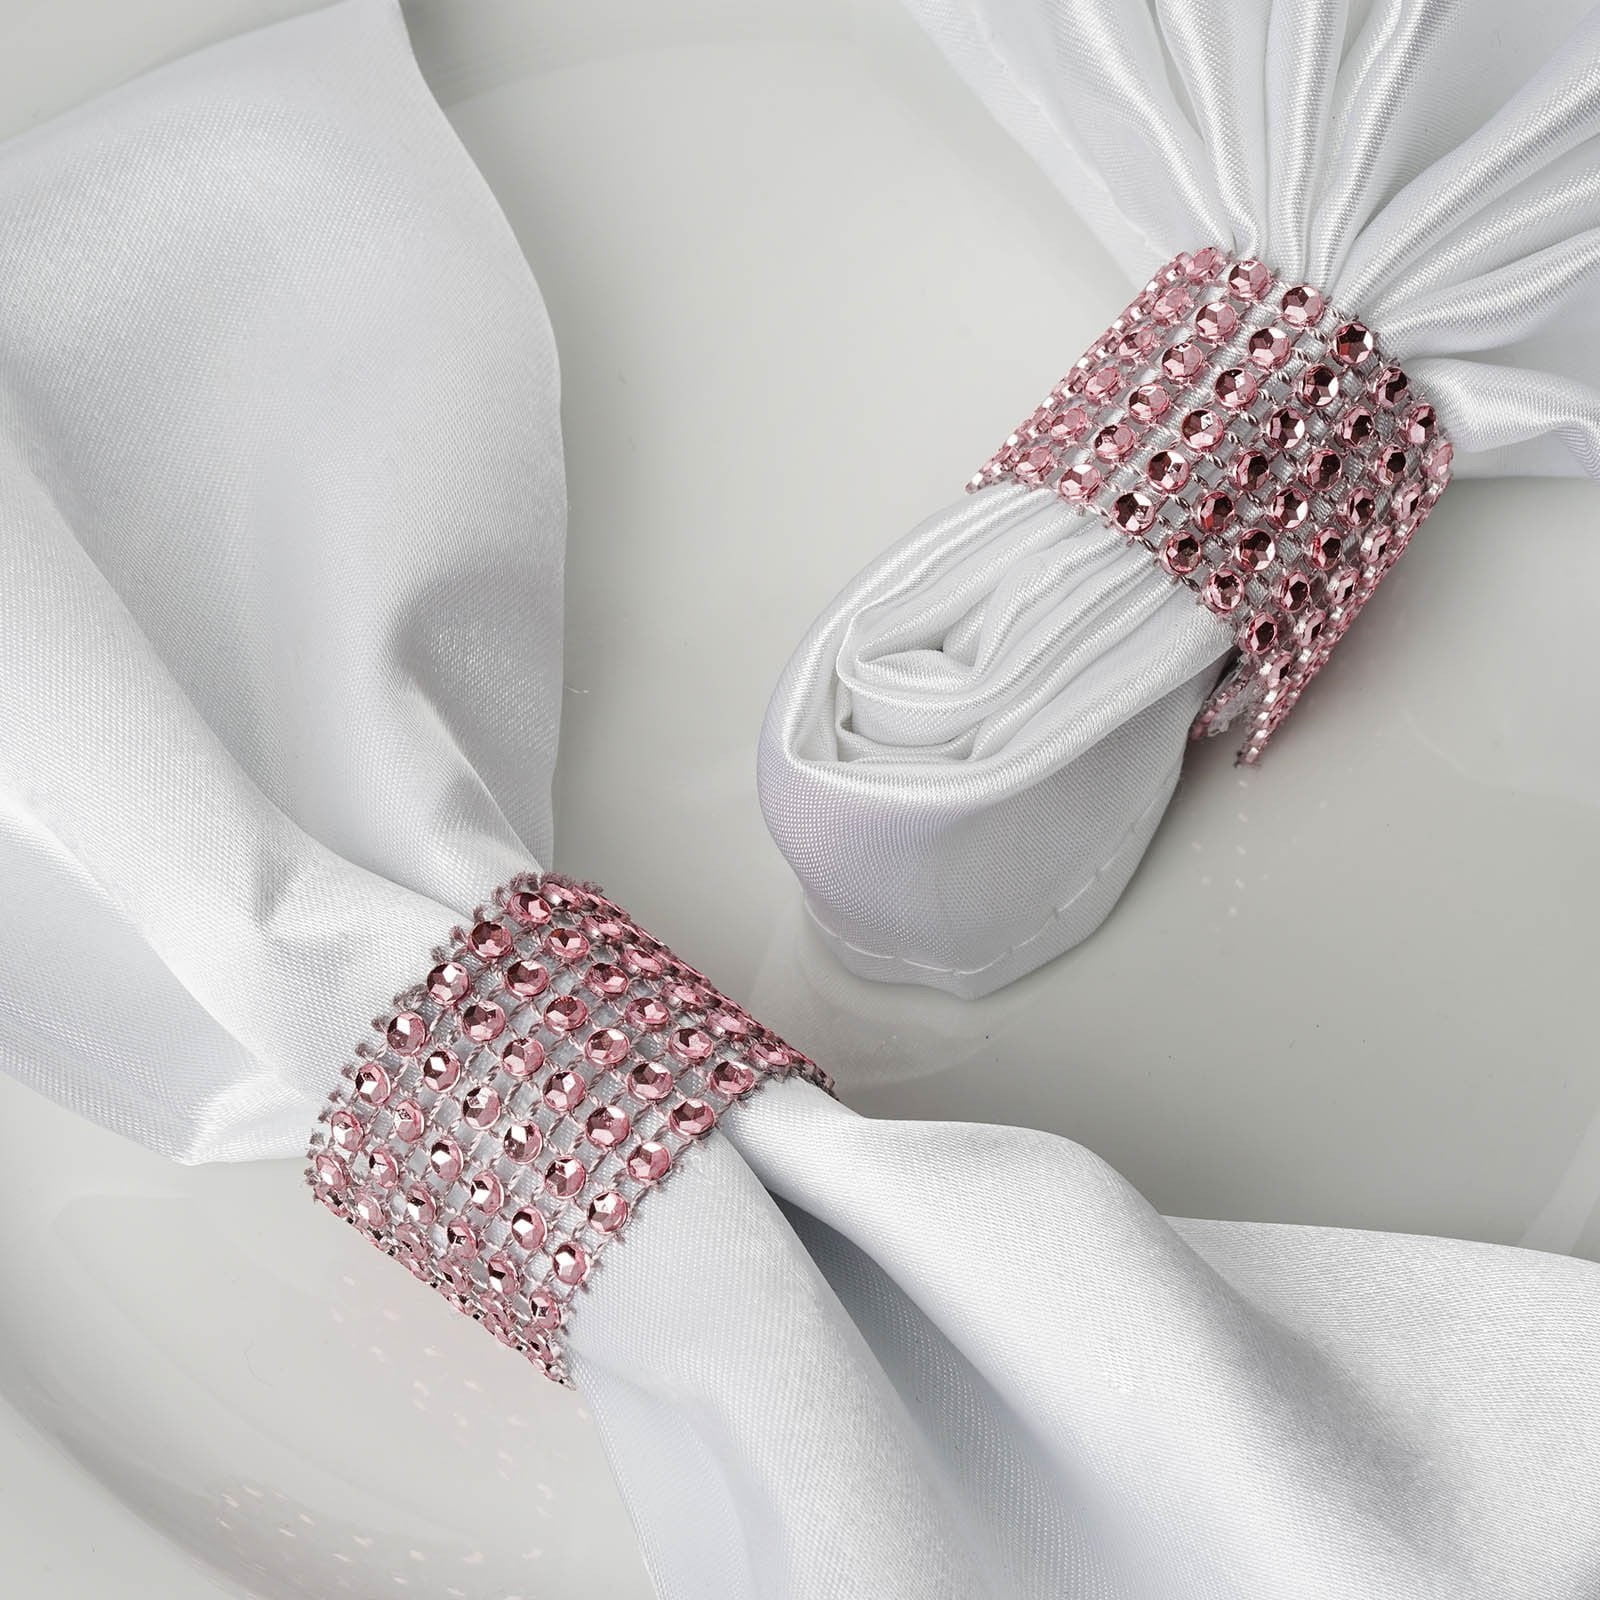 Details about   12Pcs Rhinestone Napkin Ring Set Handmade Serviette Buckle Holder Wedding Dinner 